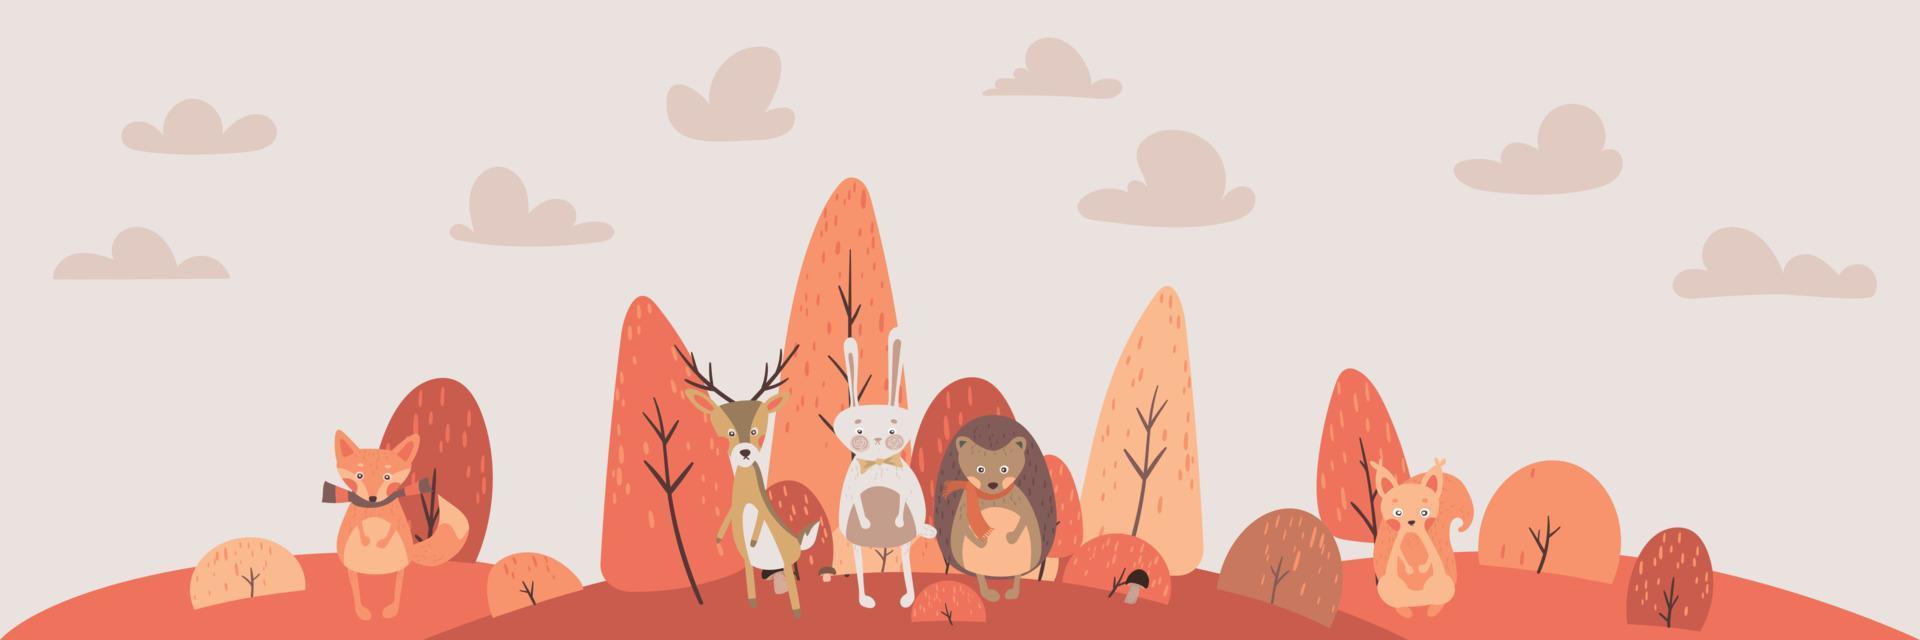 ilustração em vetor de animais da floresta bonito veado, coelho, ouriço, raposa, esquilo. animal de outono dos desenhos animados. cair personagem de floresta de árvore. ótimo para chá de bebê e design de bebê.